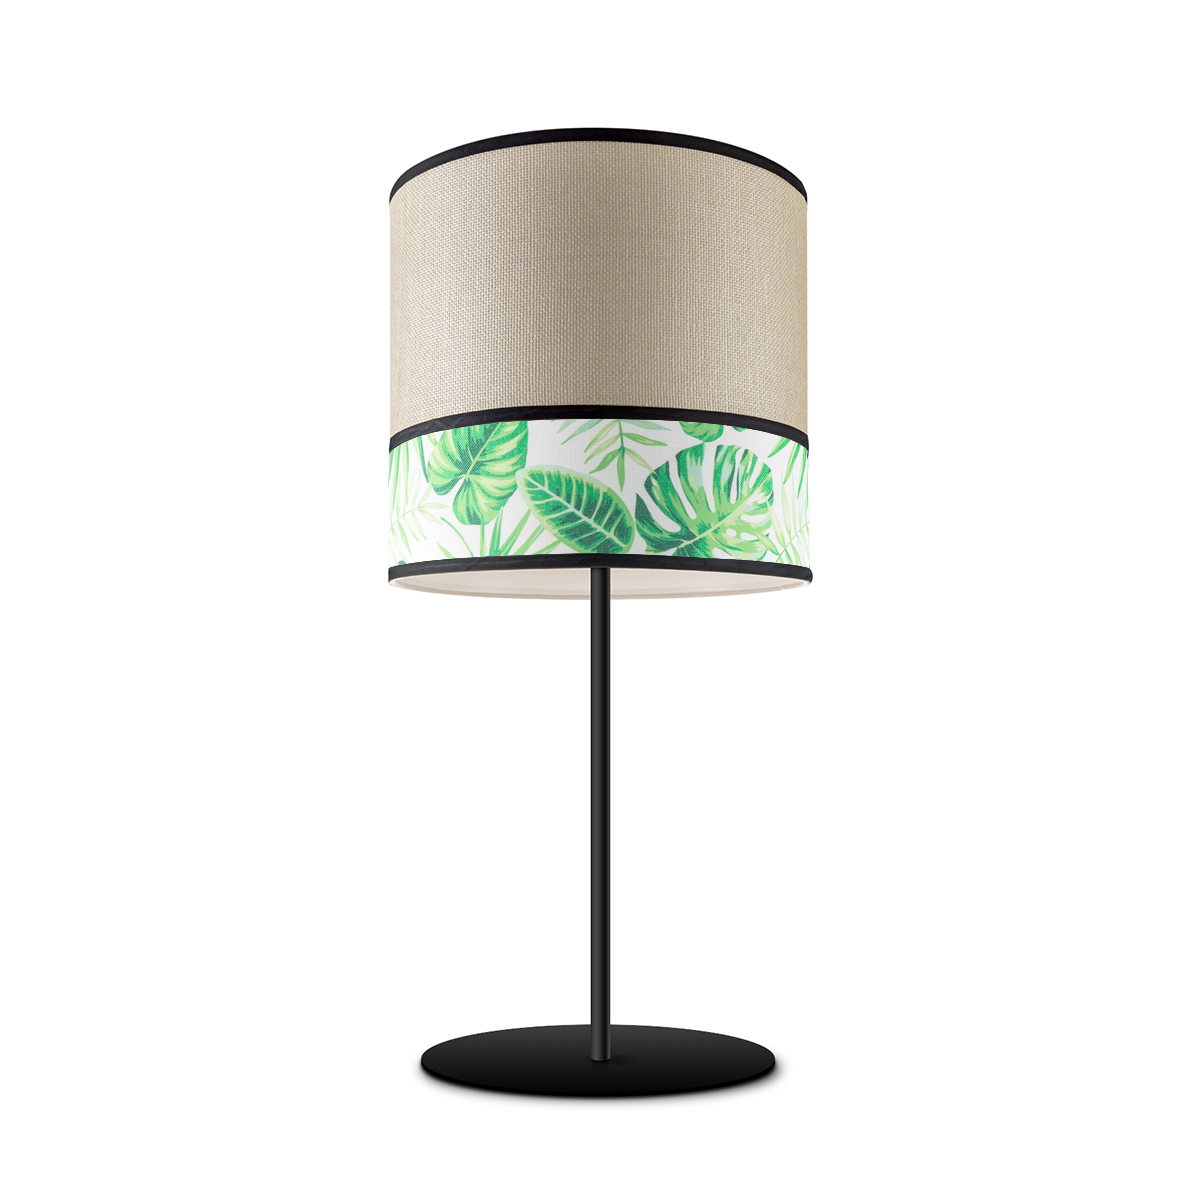 Tangla lighting - TLT7041-25A - Table lamp 1 Light - metal + paper + TC fabric - spring - leaf - E27